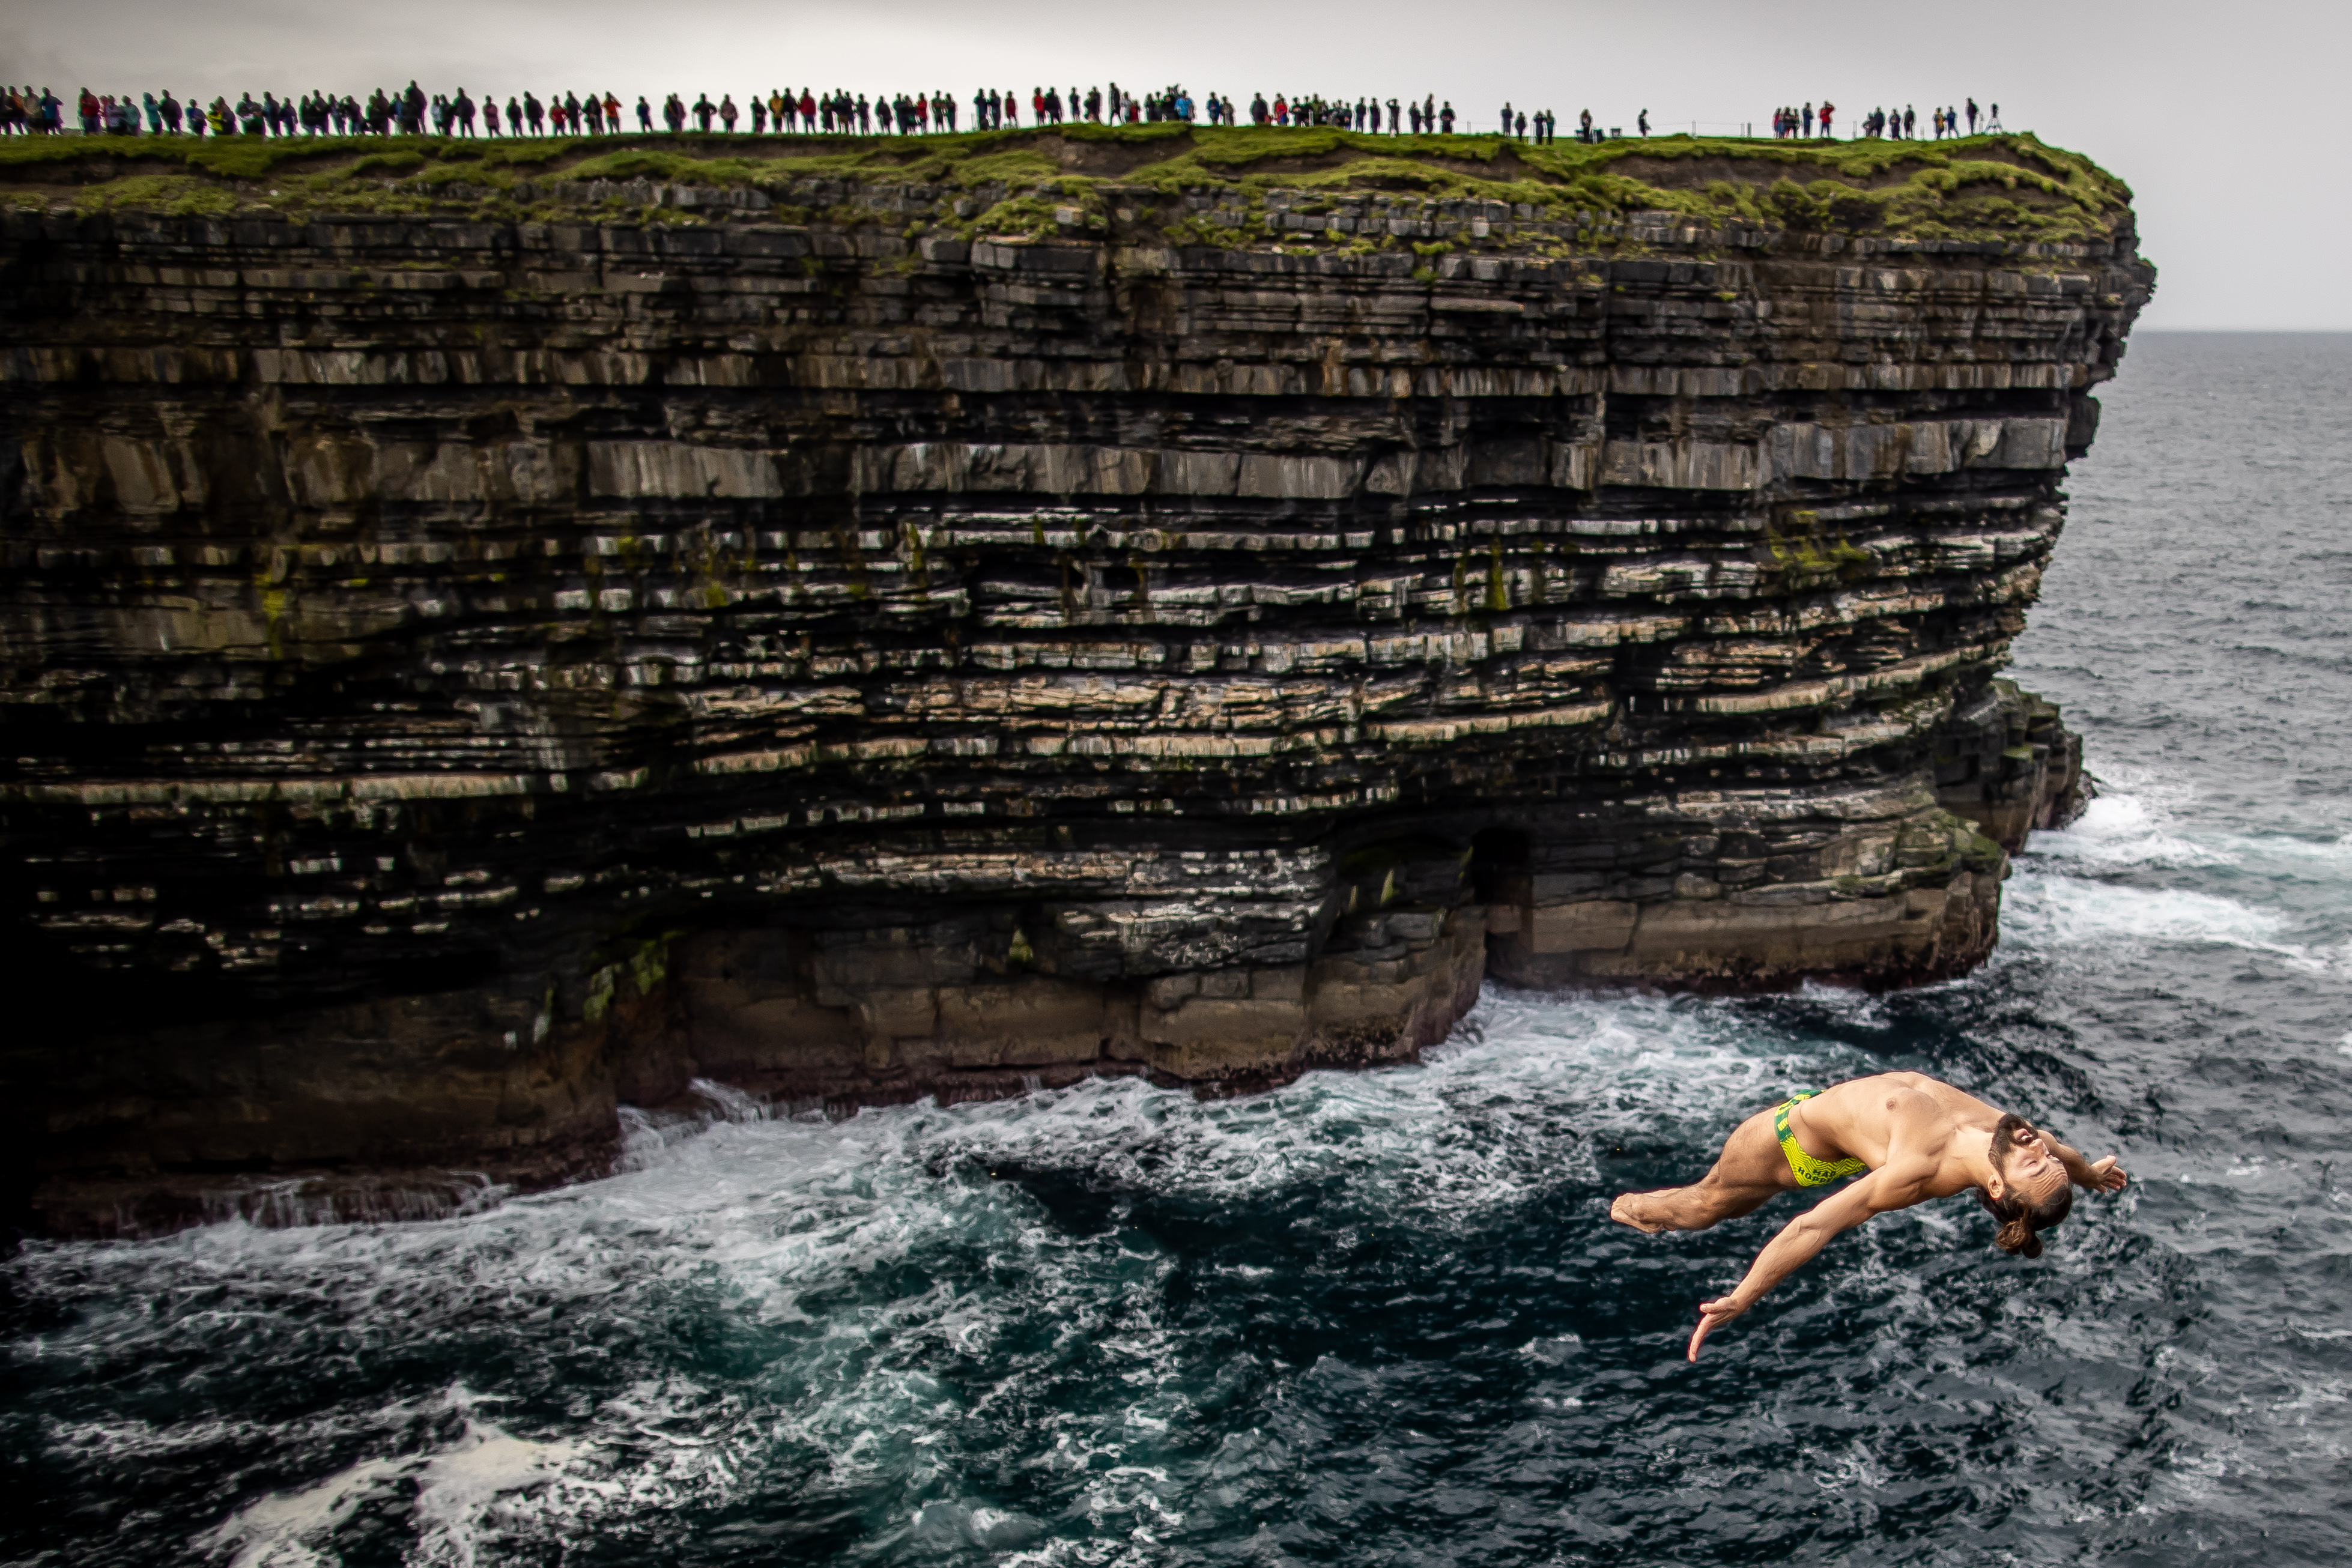 Catalin Preda terjun dari ketinggian 27,5 meter sebelum menyelami laut dengan gerakan akrobatik pada September 2021. Dia mengikuti kompetisi Red Bull Cliff Diving World Series yang diadakan di Irlandia. Foto: Morgan Treacy